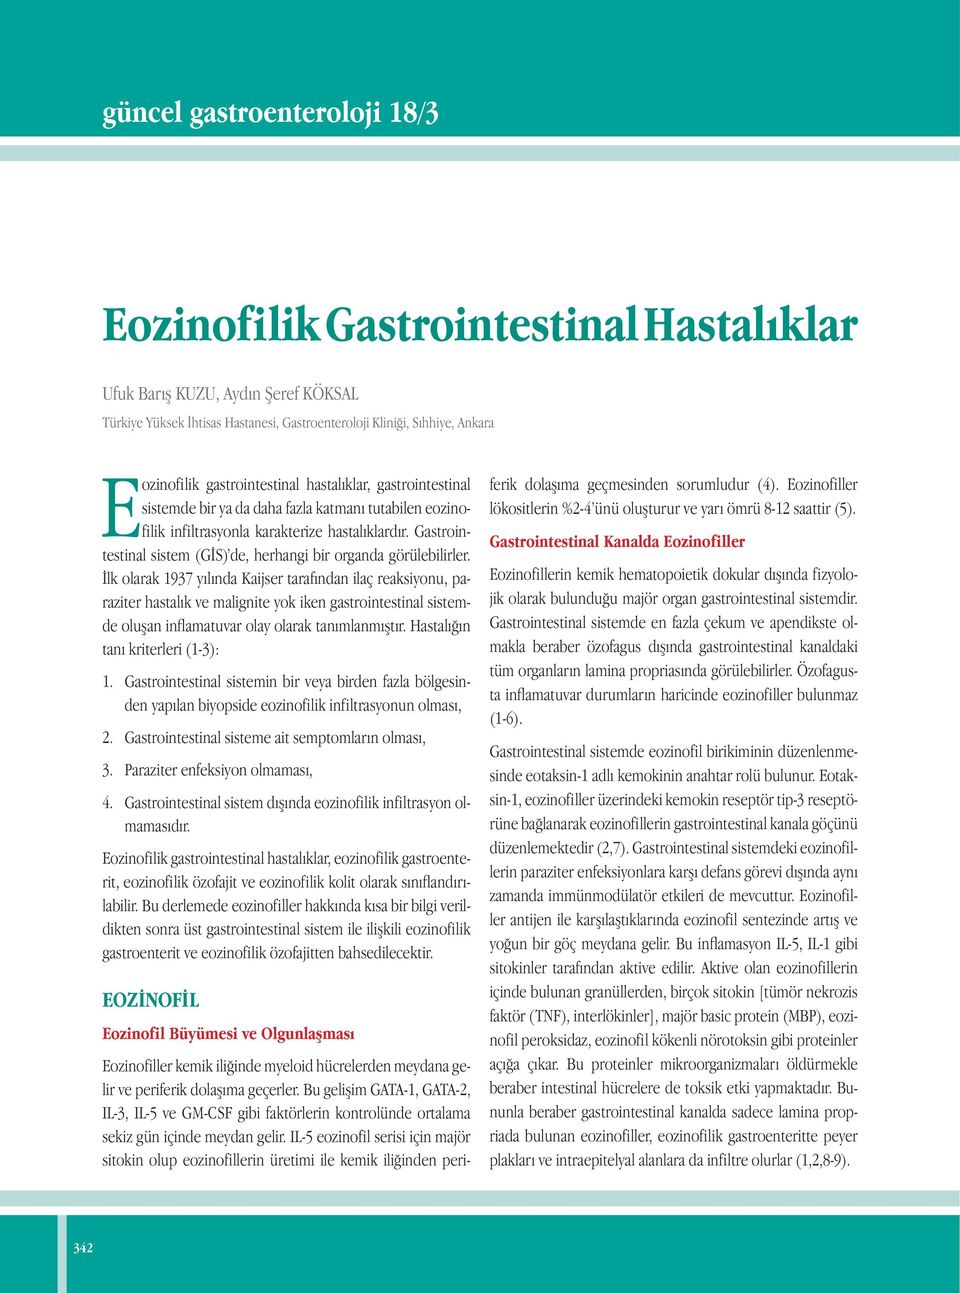 Gastrointestinal sistem (GİS) de, herhangi bir organda görülebilirler.